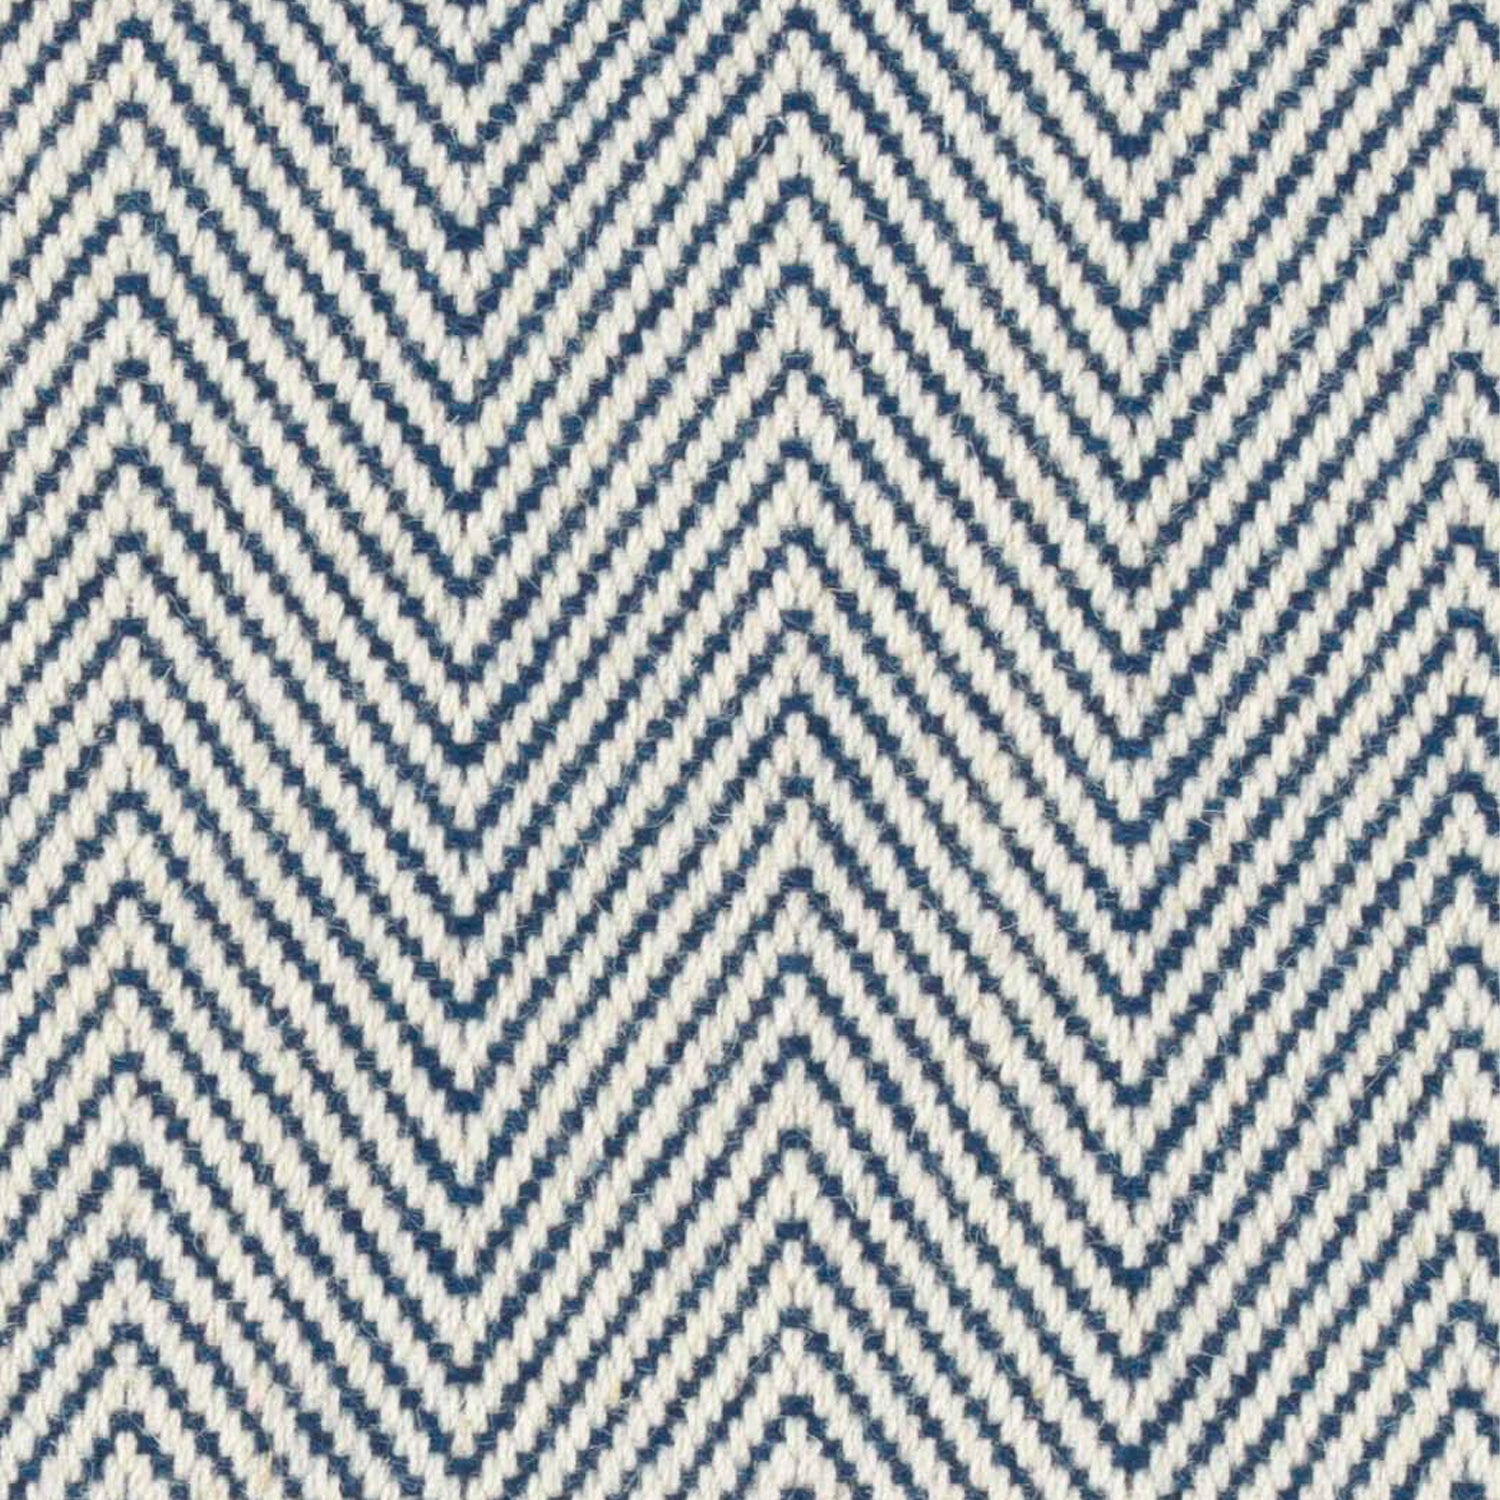 Wool broadloom carpet swatch in a herringbone weave in navy and white.